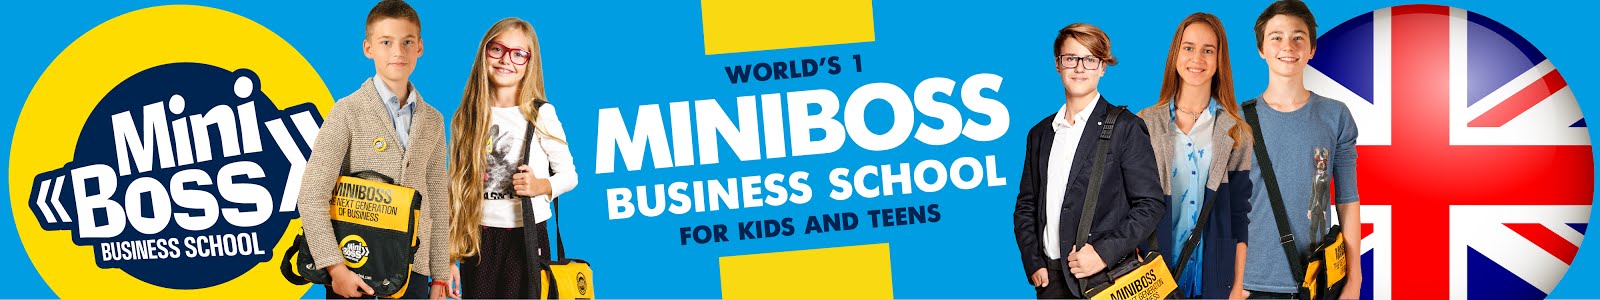 MINIBOSS BUSINESS SCHOOL (UNITED KINGDOM)